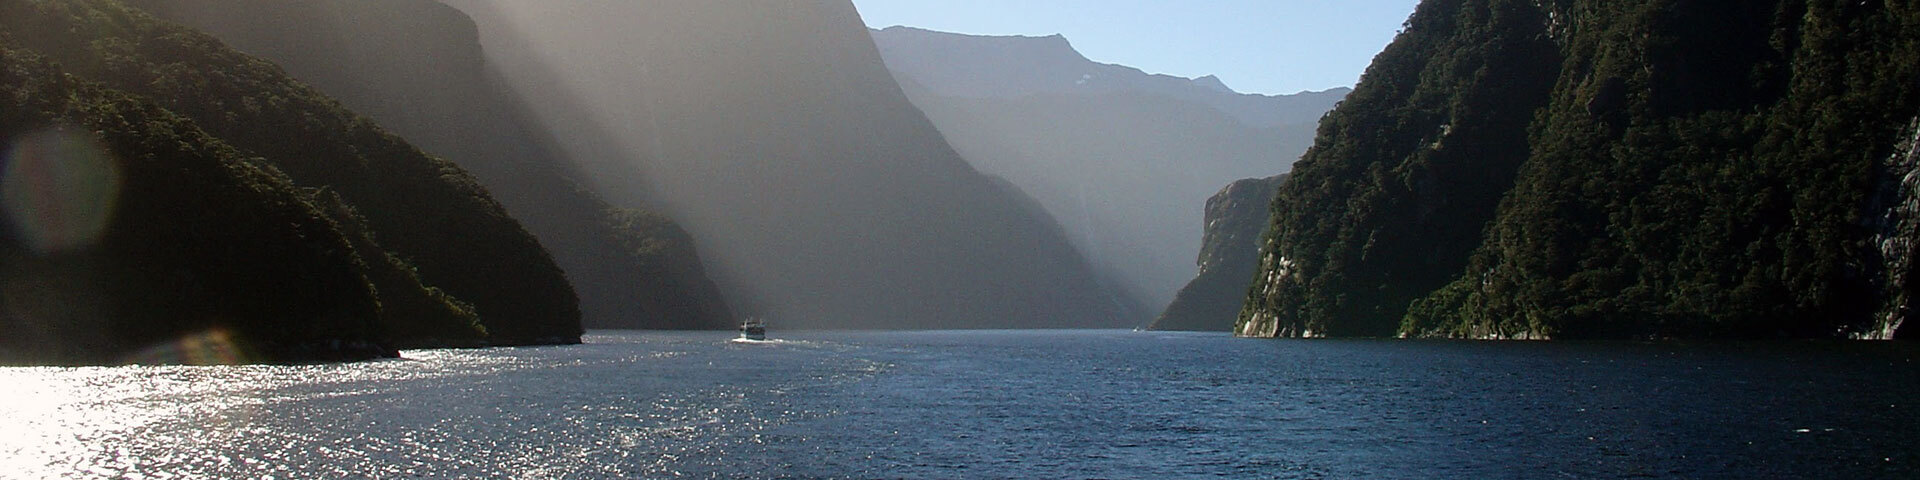 Fjord majestueux avec rayons solaires, falaises abruptes et bateau naviguant.